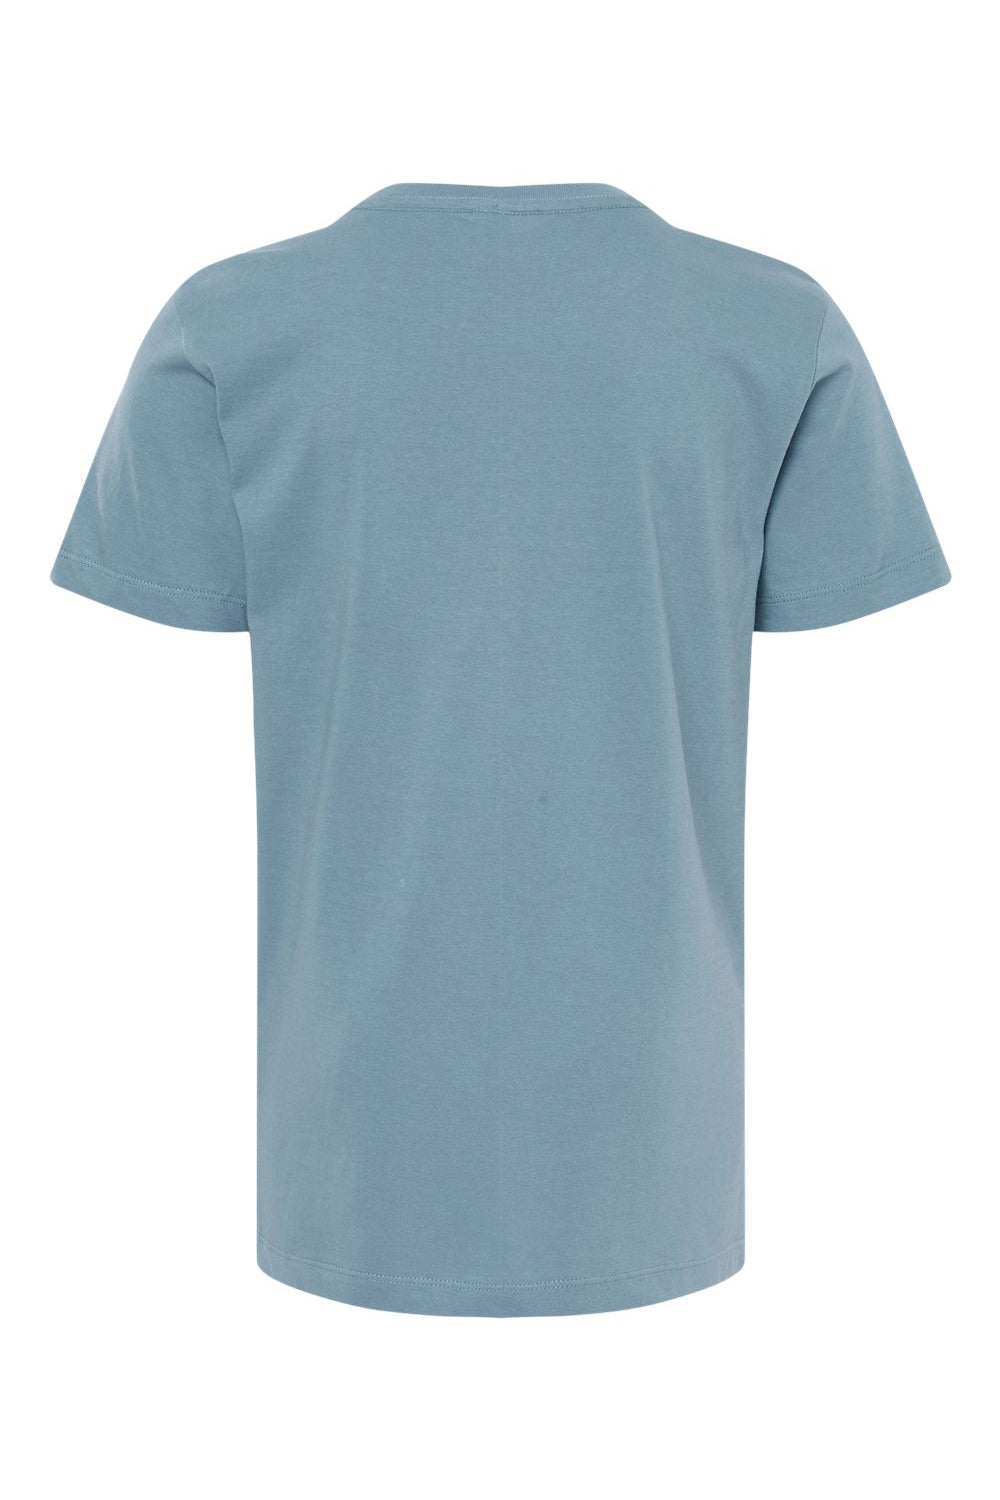 SoftShirts 402 Youth Organic Short Sleeve Crewneck T-Shirt Slate Blue Flat Back